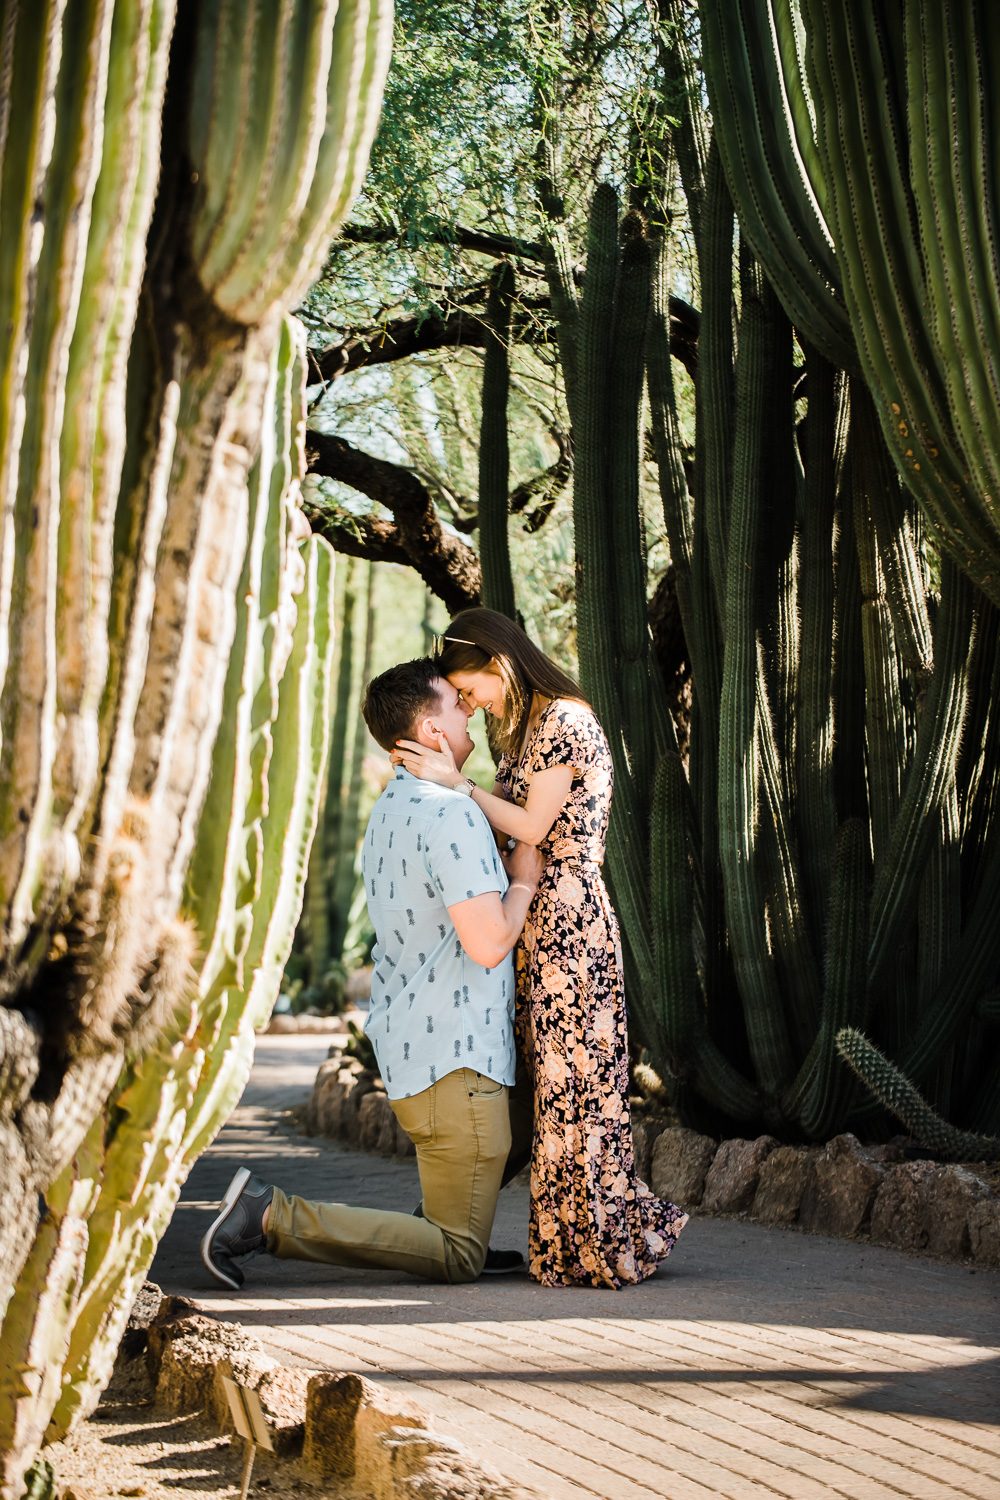 Surprise wedding proposal at Desert Botanical Gardens